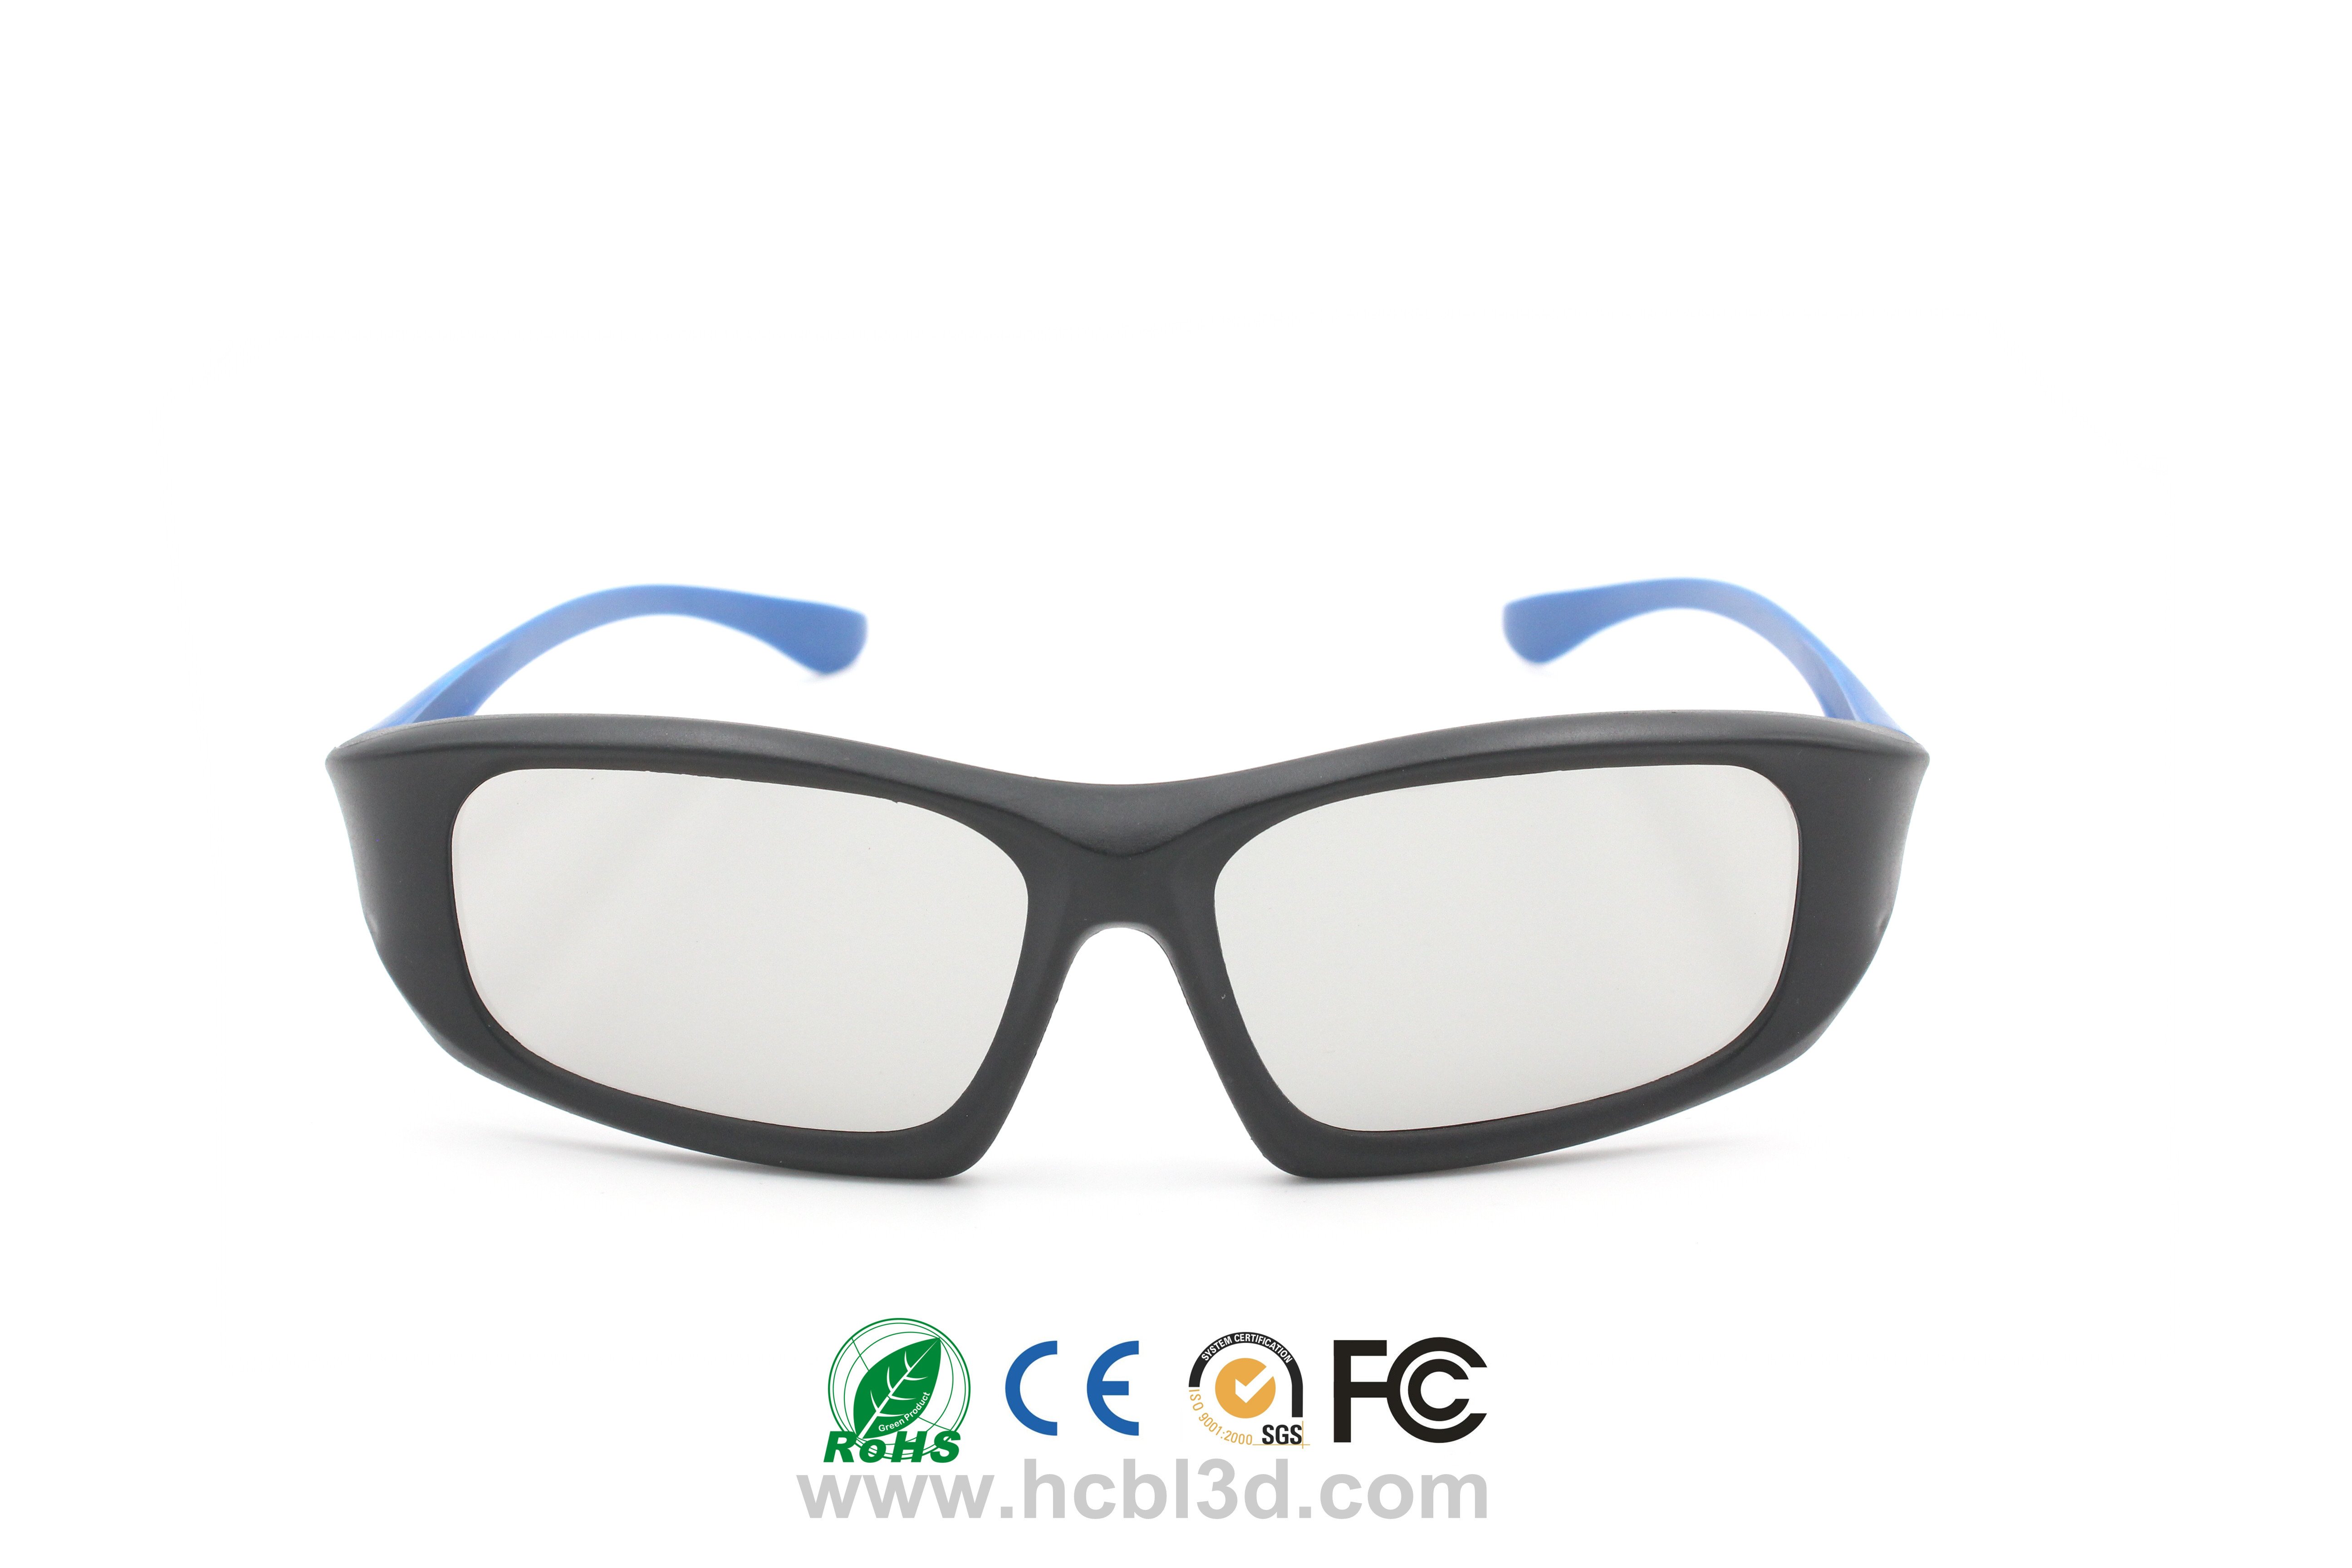 Customized Polarized 3D Glasses unique design for 3D cinemas